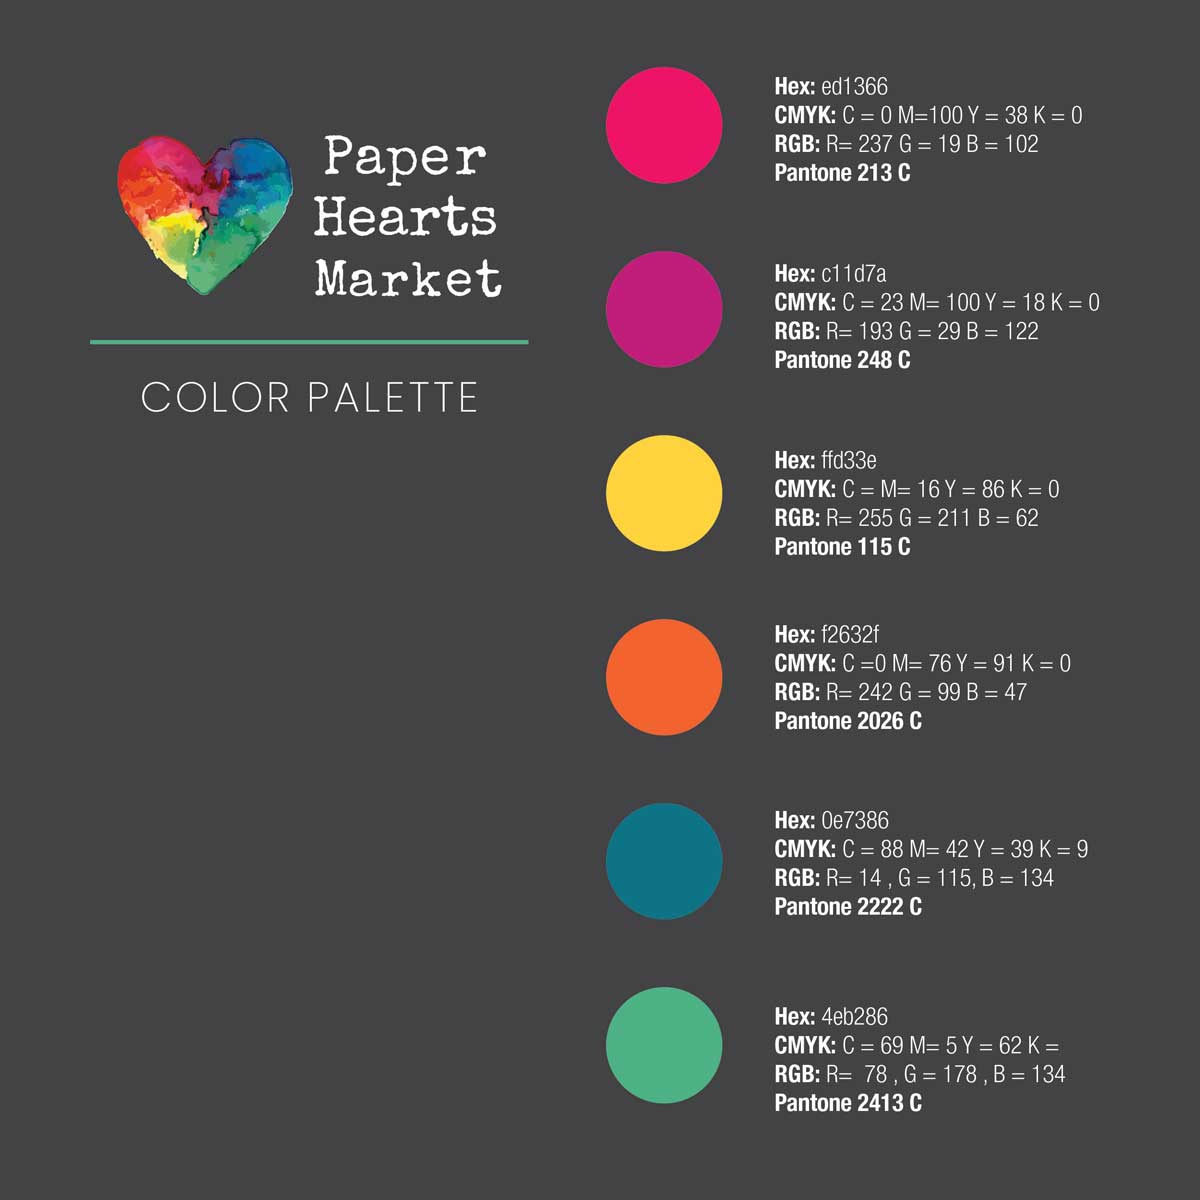 Color Palette translation guide for Paper Hearts Market